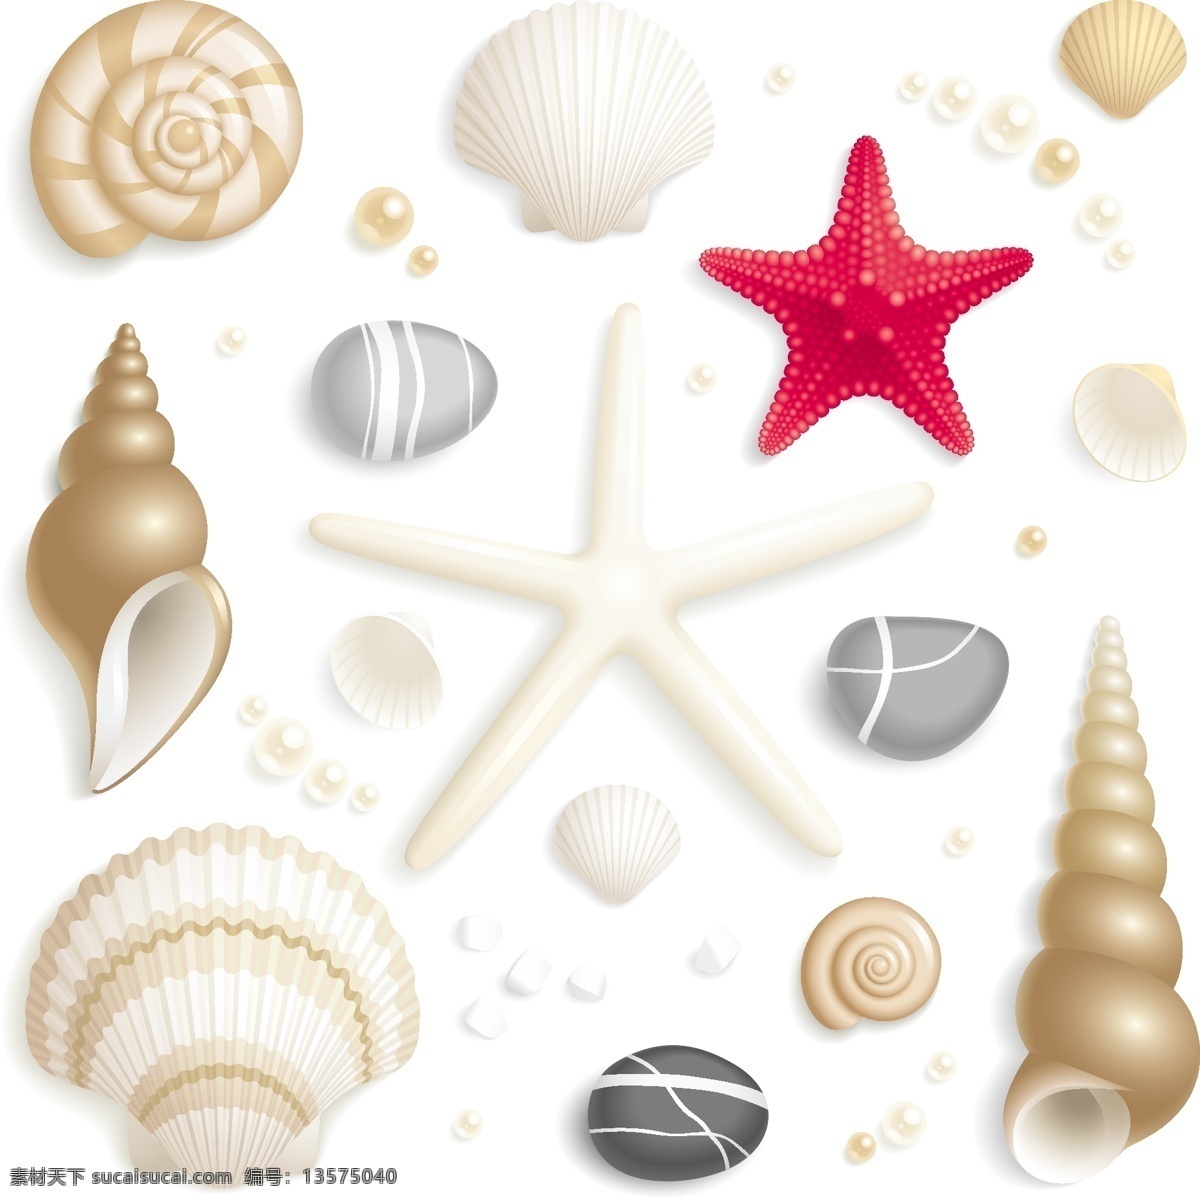 贝壳 海螺 海星 海洋生物 生物世界 珍珠 装饰品 珍珠矢量素材 珍珠模板下载 矢量 矢量图 其他矢量图